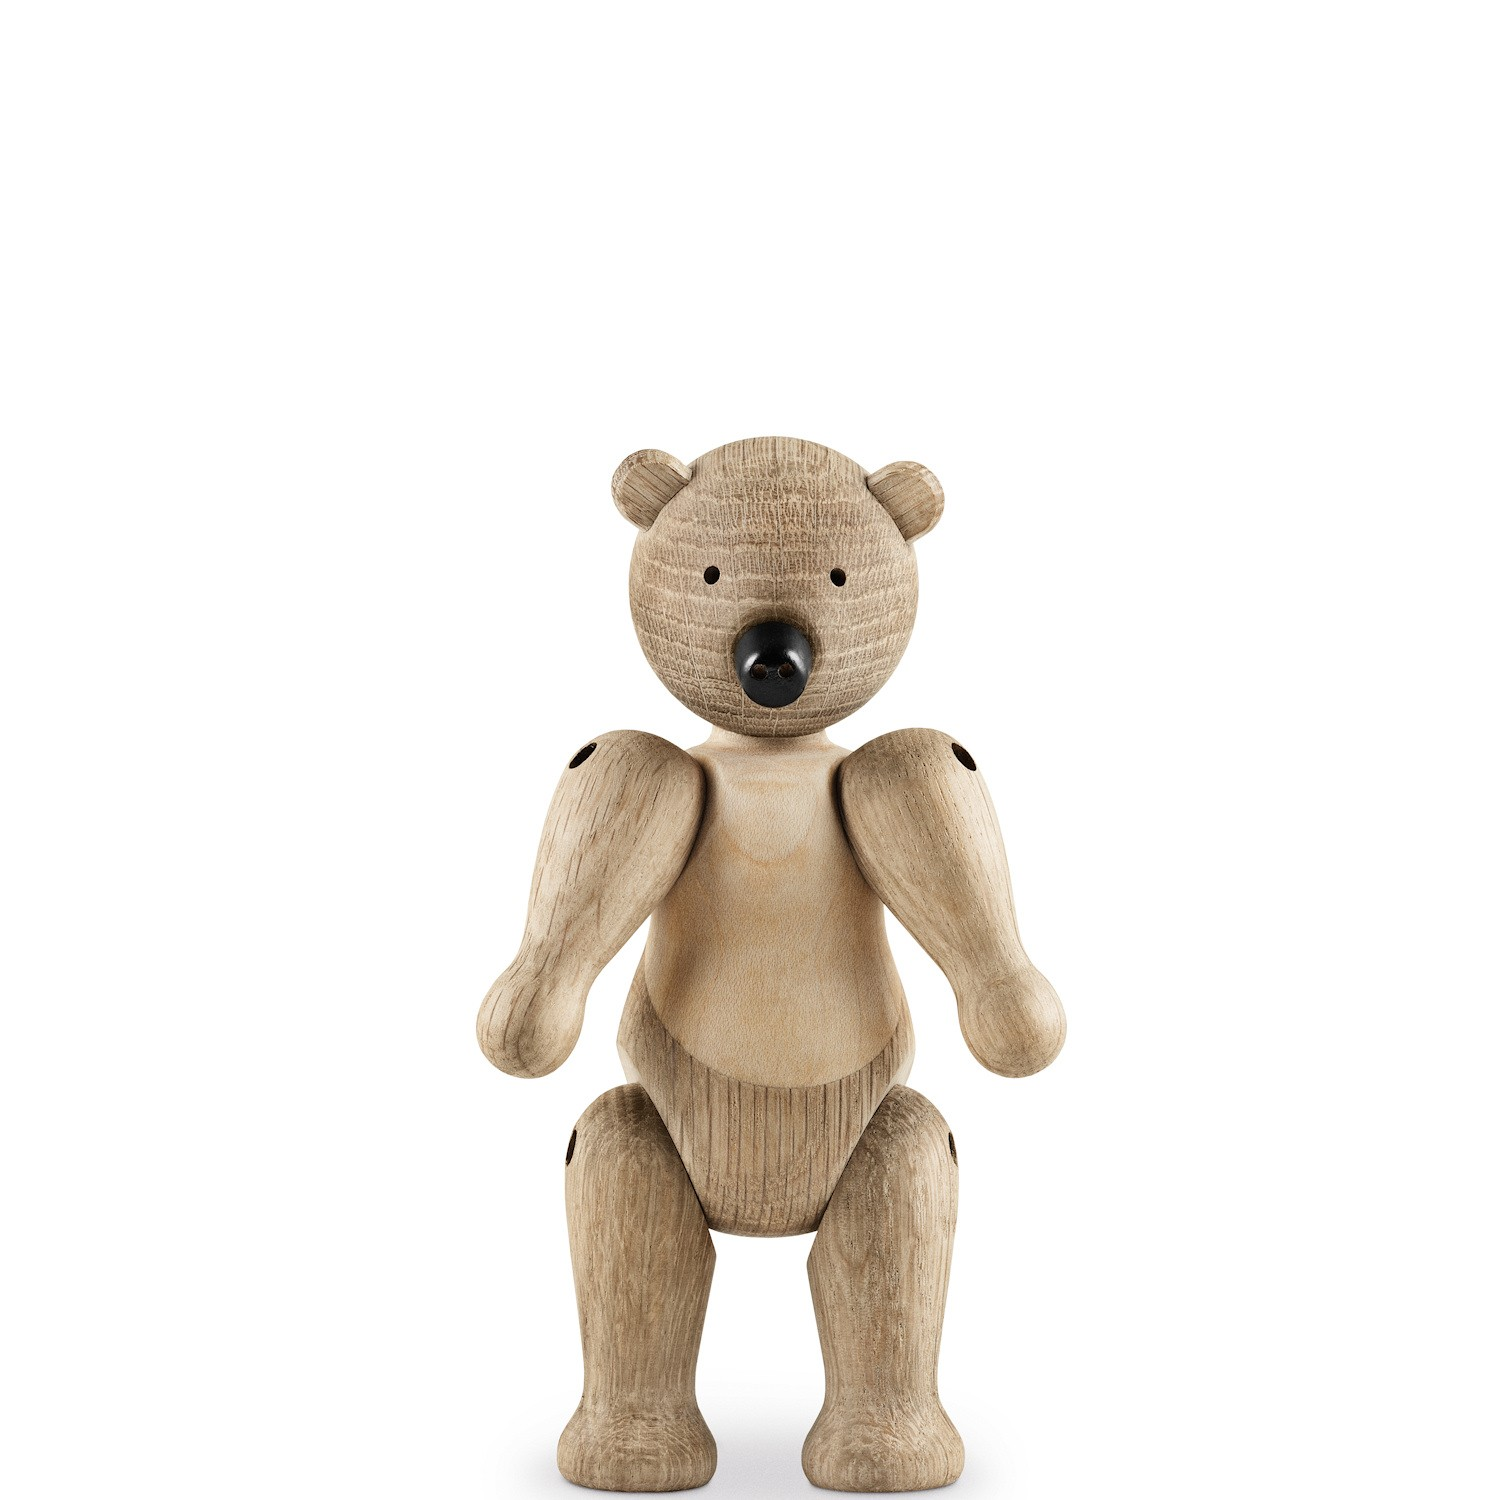 Decorative figurine BEAR Oak wood